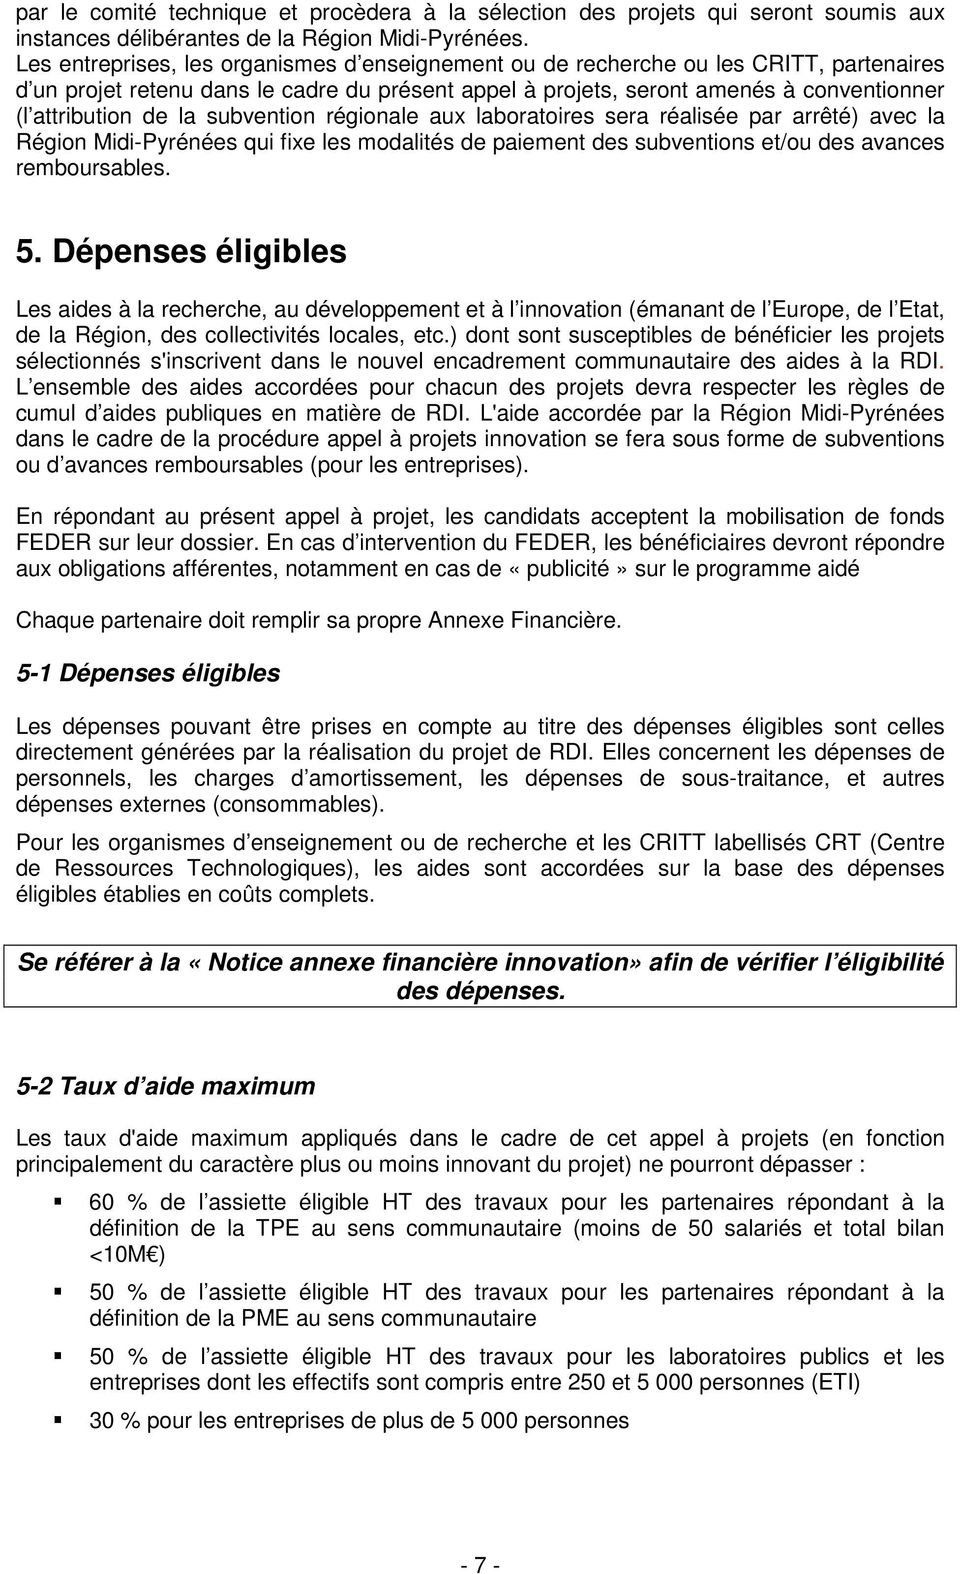 la subvention régionale aux laboratoires sera réalisée par arrêté) avec la Région Midi-Pyrénées qui fixe les modalités de paiement des subventions et/ou des avances remboursables. 5.